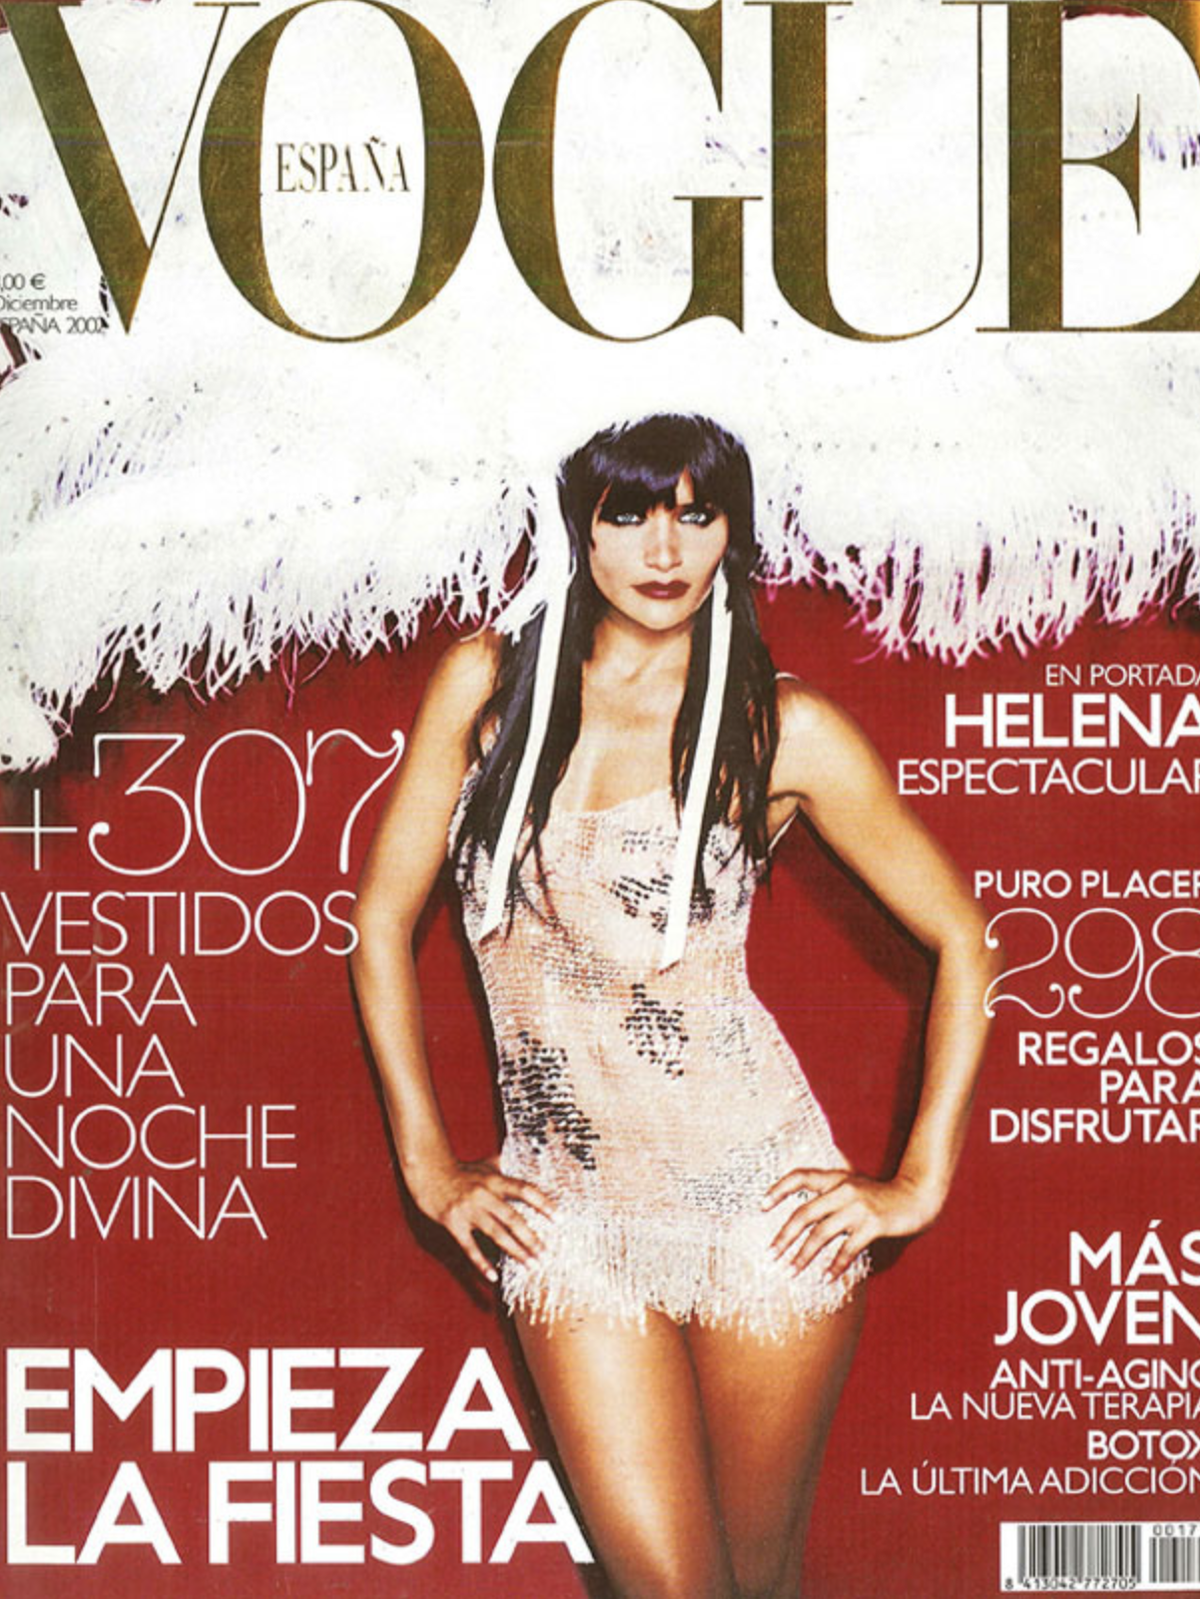 Vogue Spain December 2002 by Ellen von Unwerth